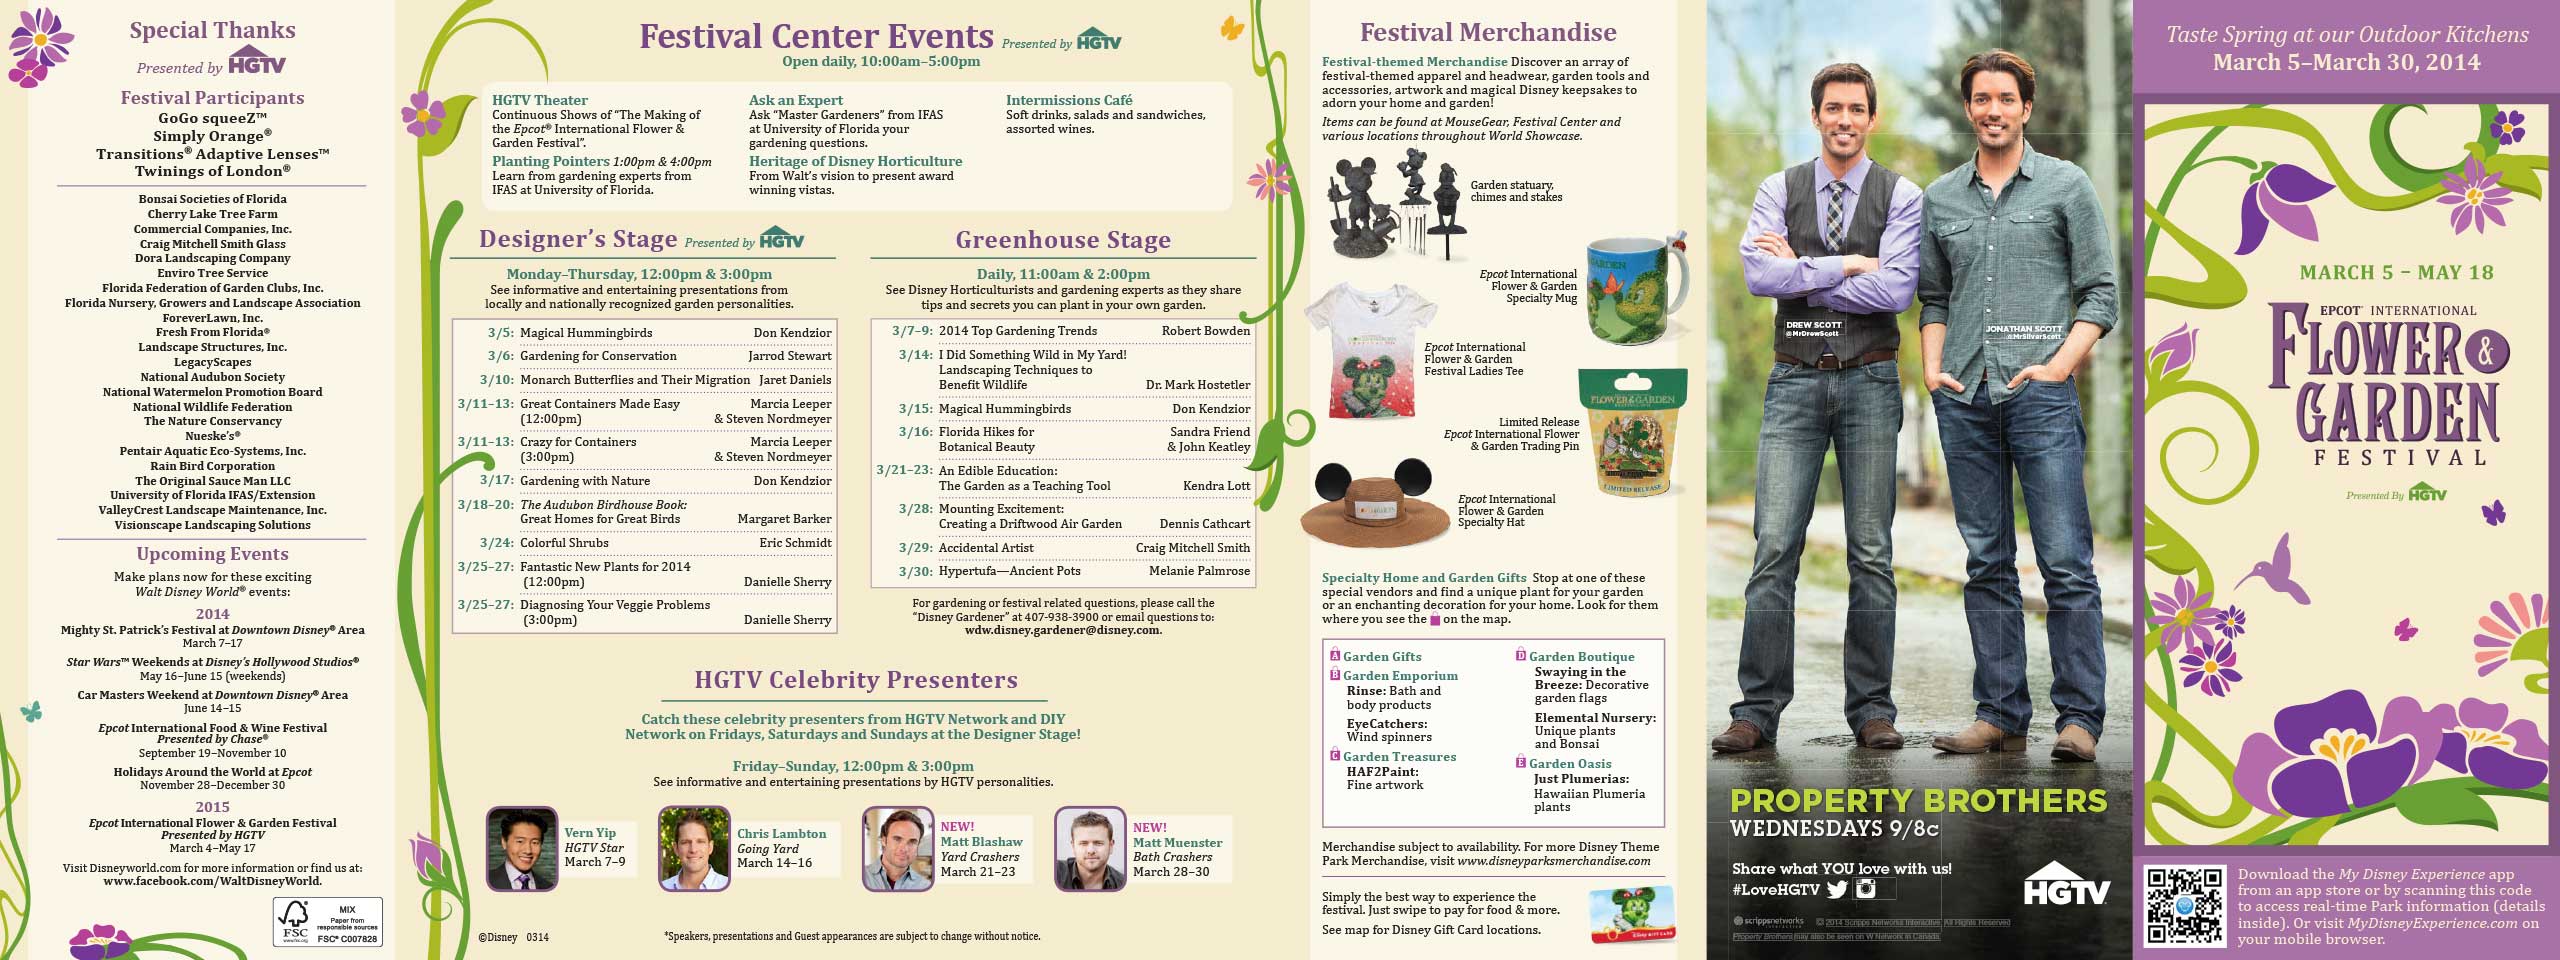 2014 Epcot International Flower & Garden Festival - Outdoor Kitchens